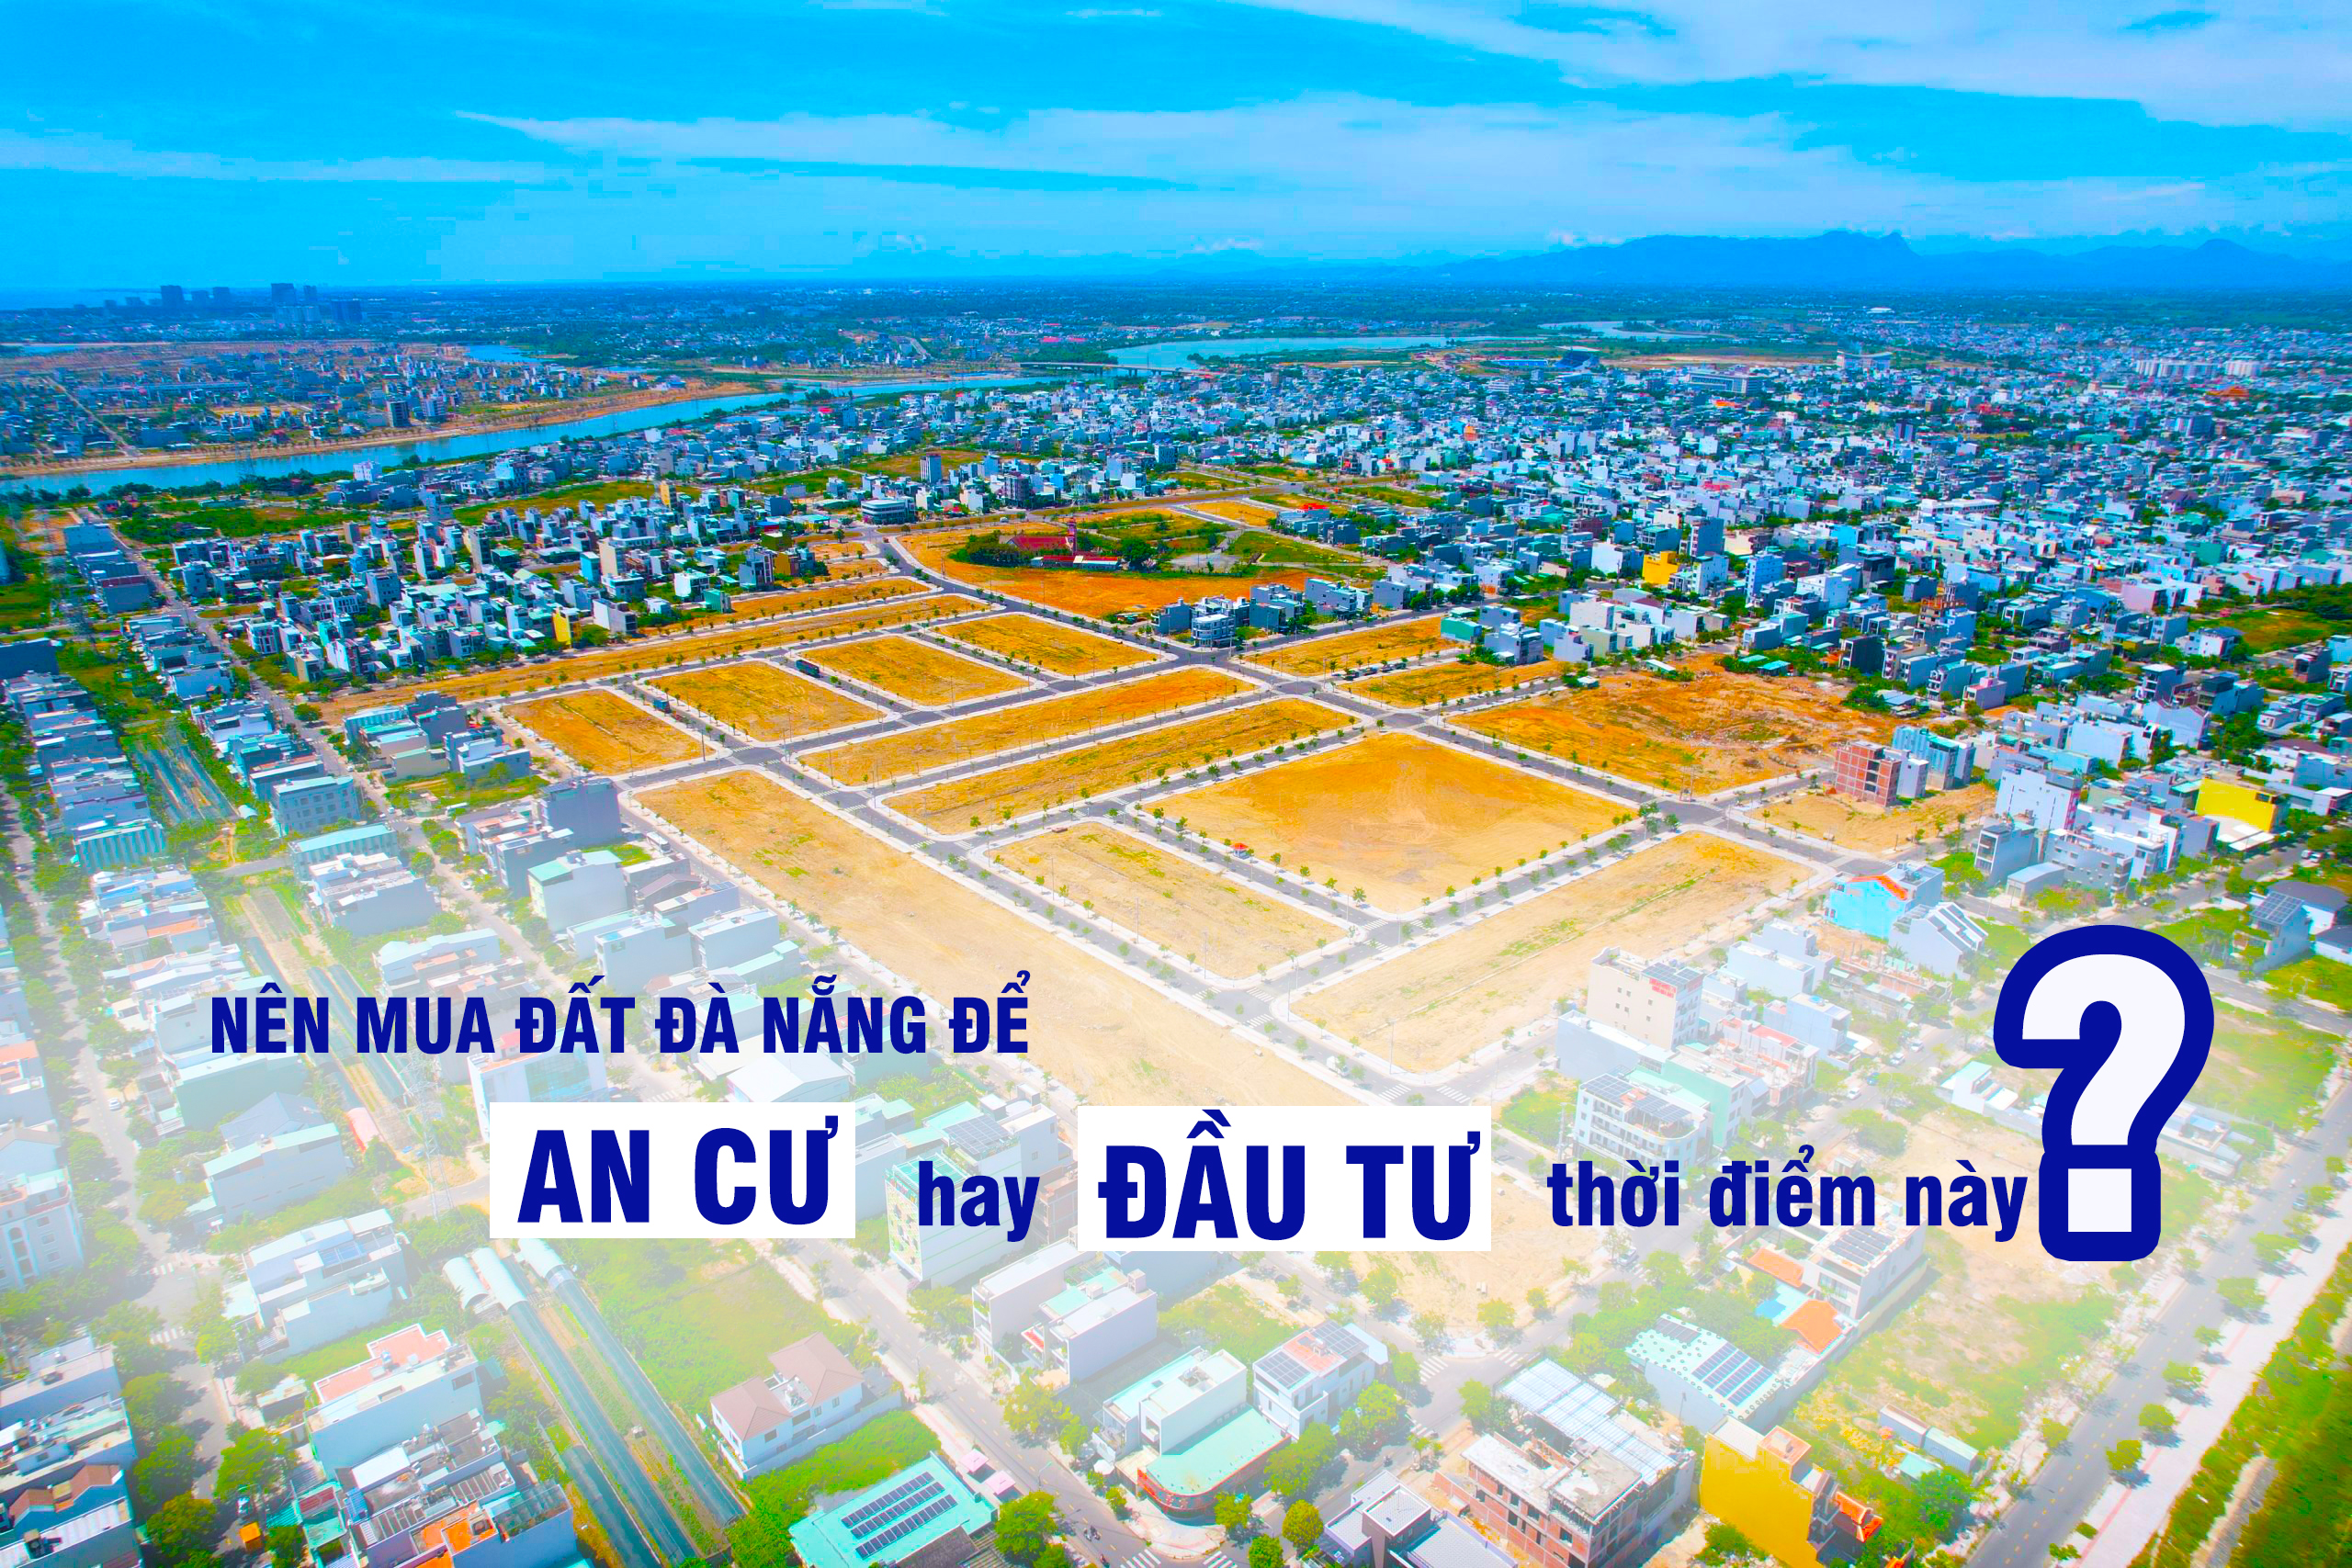 Nên mua đất Đà Nẵng để ‘an cư’ hay ‘đầu tư’ thời điểm này?